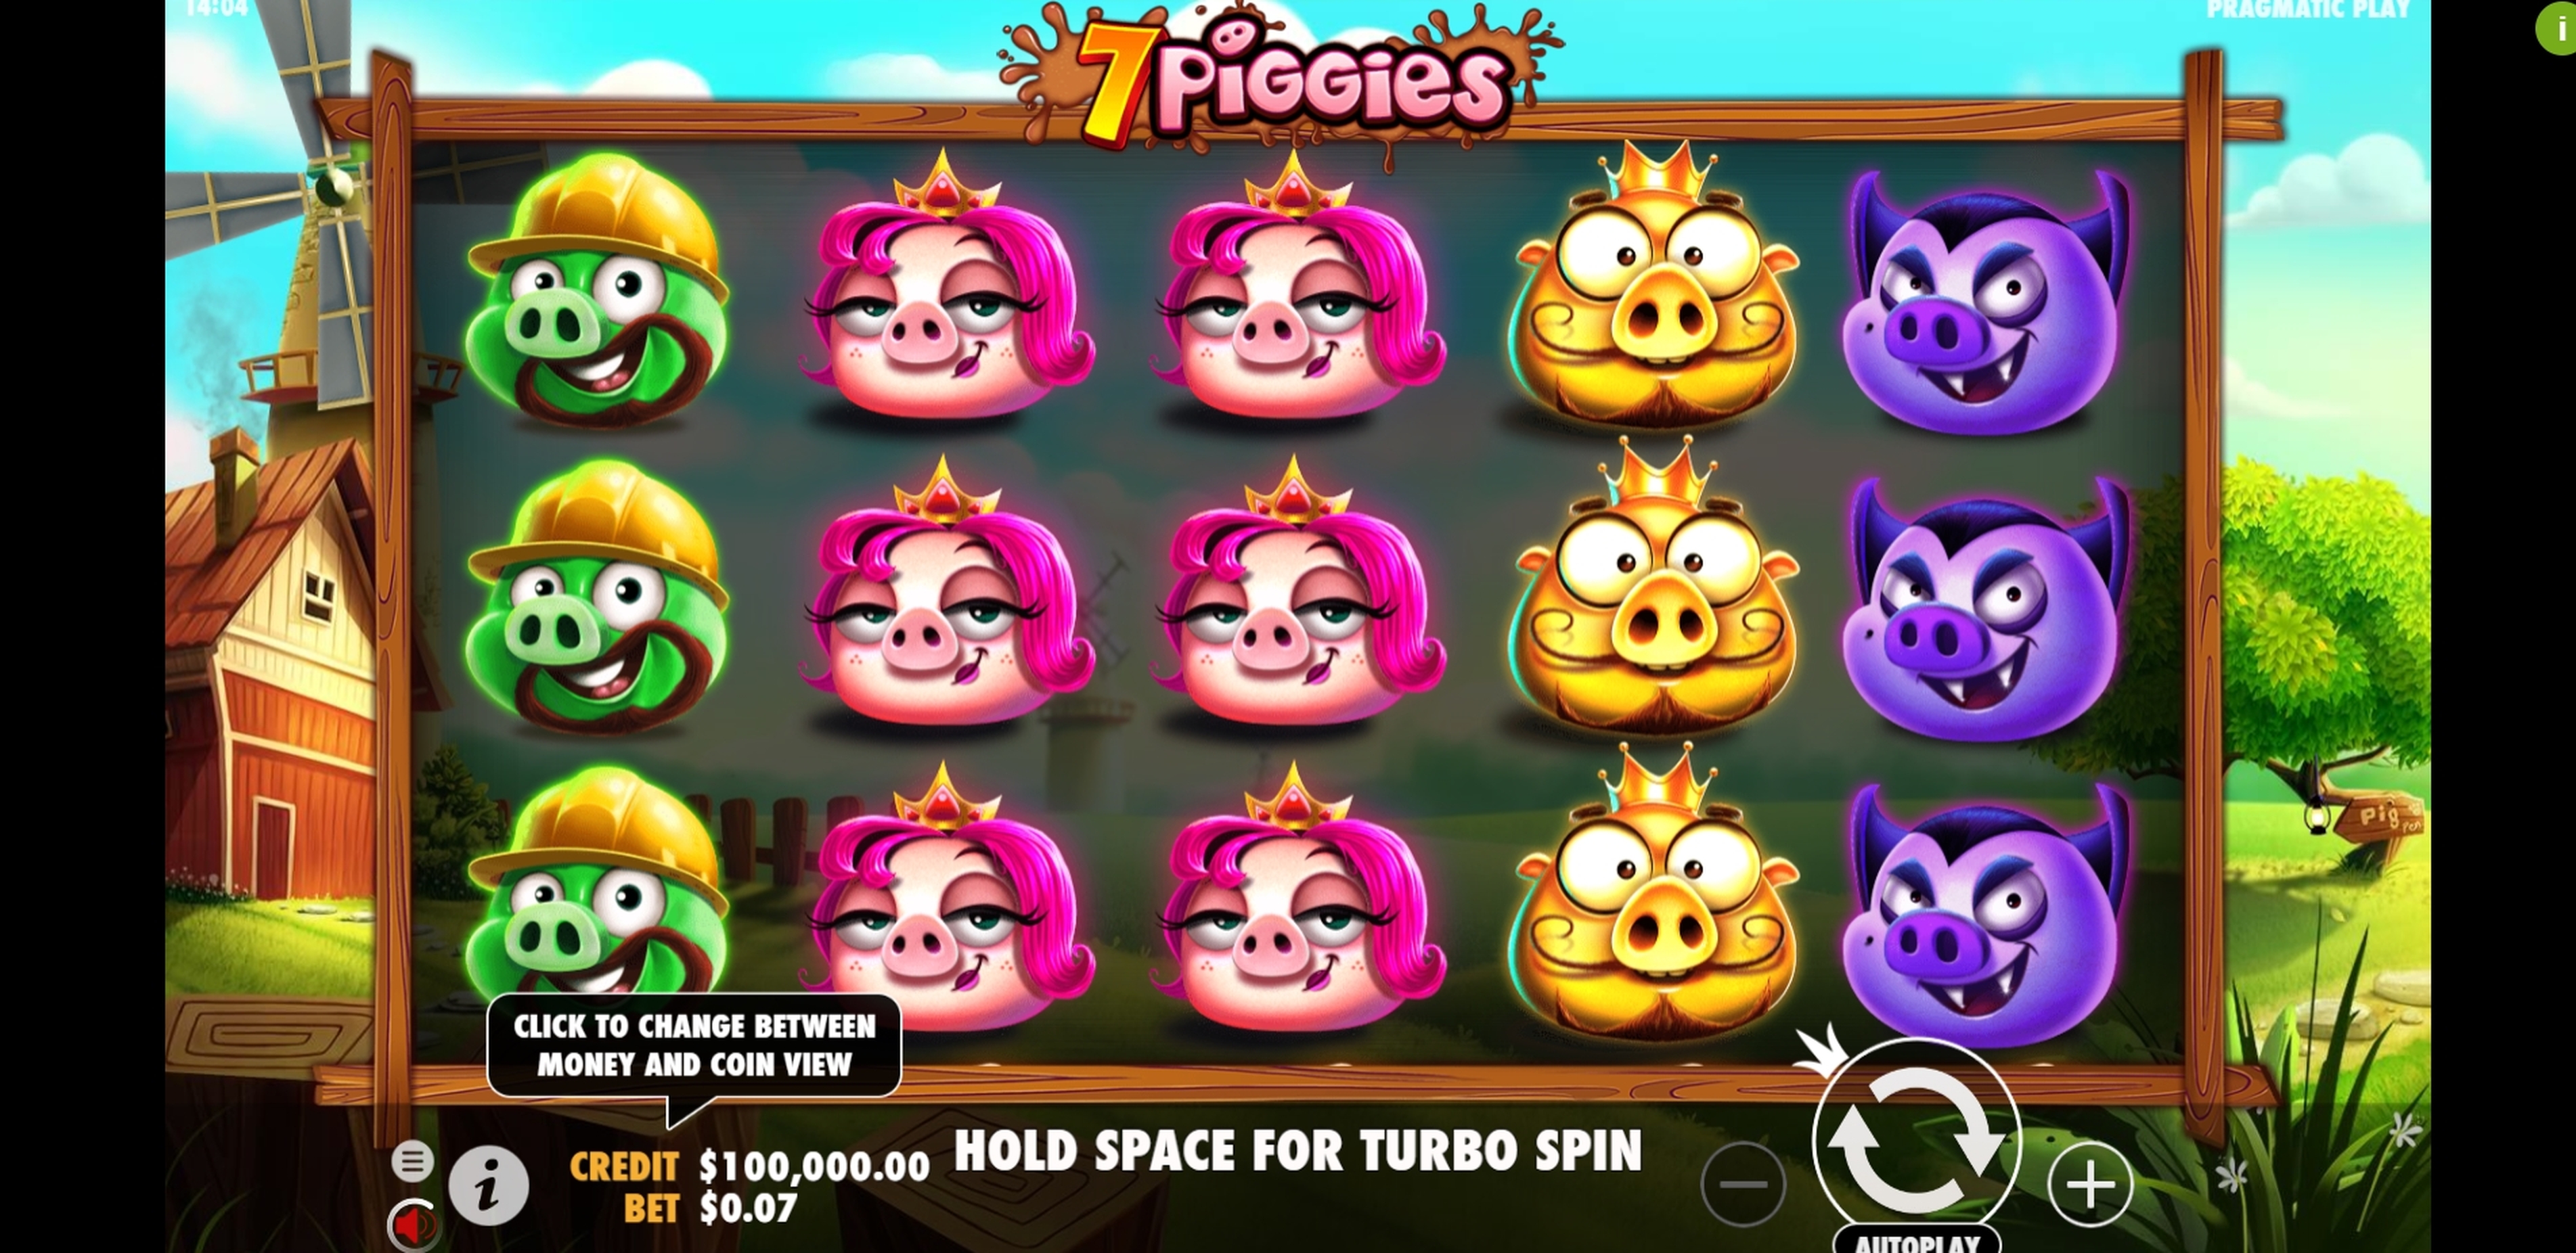 Reels in 7 Piggies Slot Game by Pragmatic Play